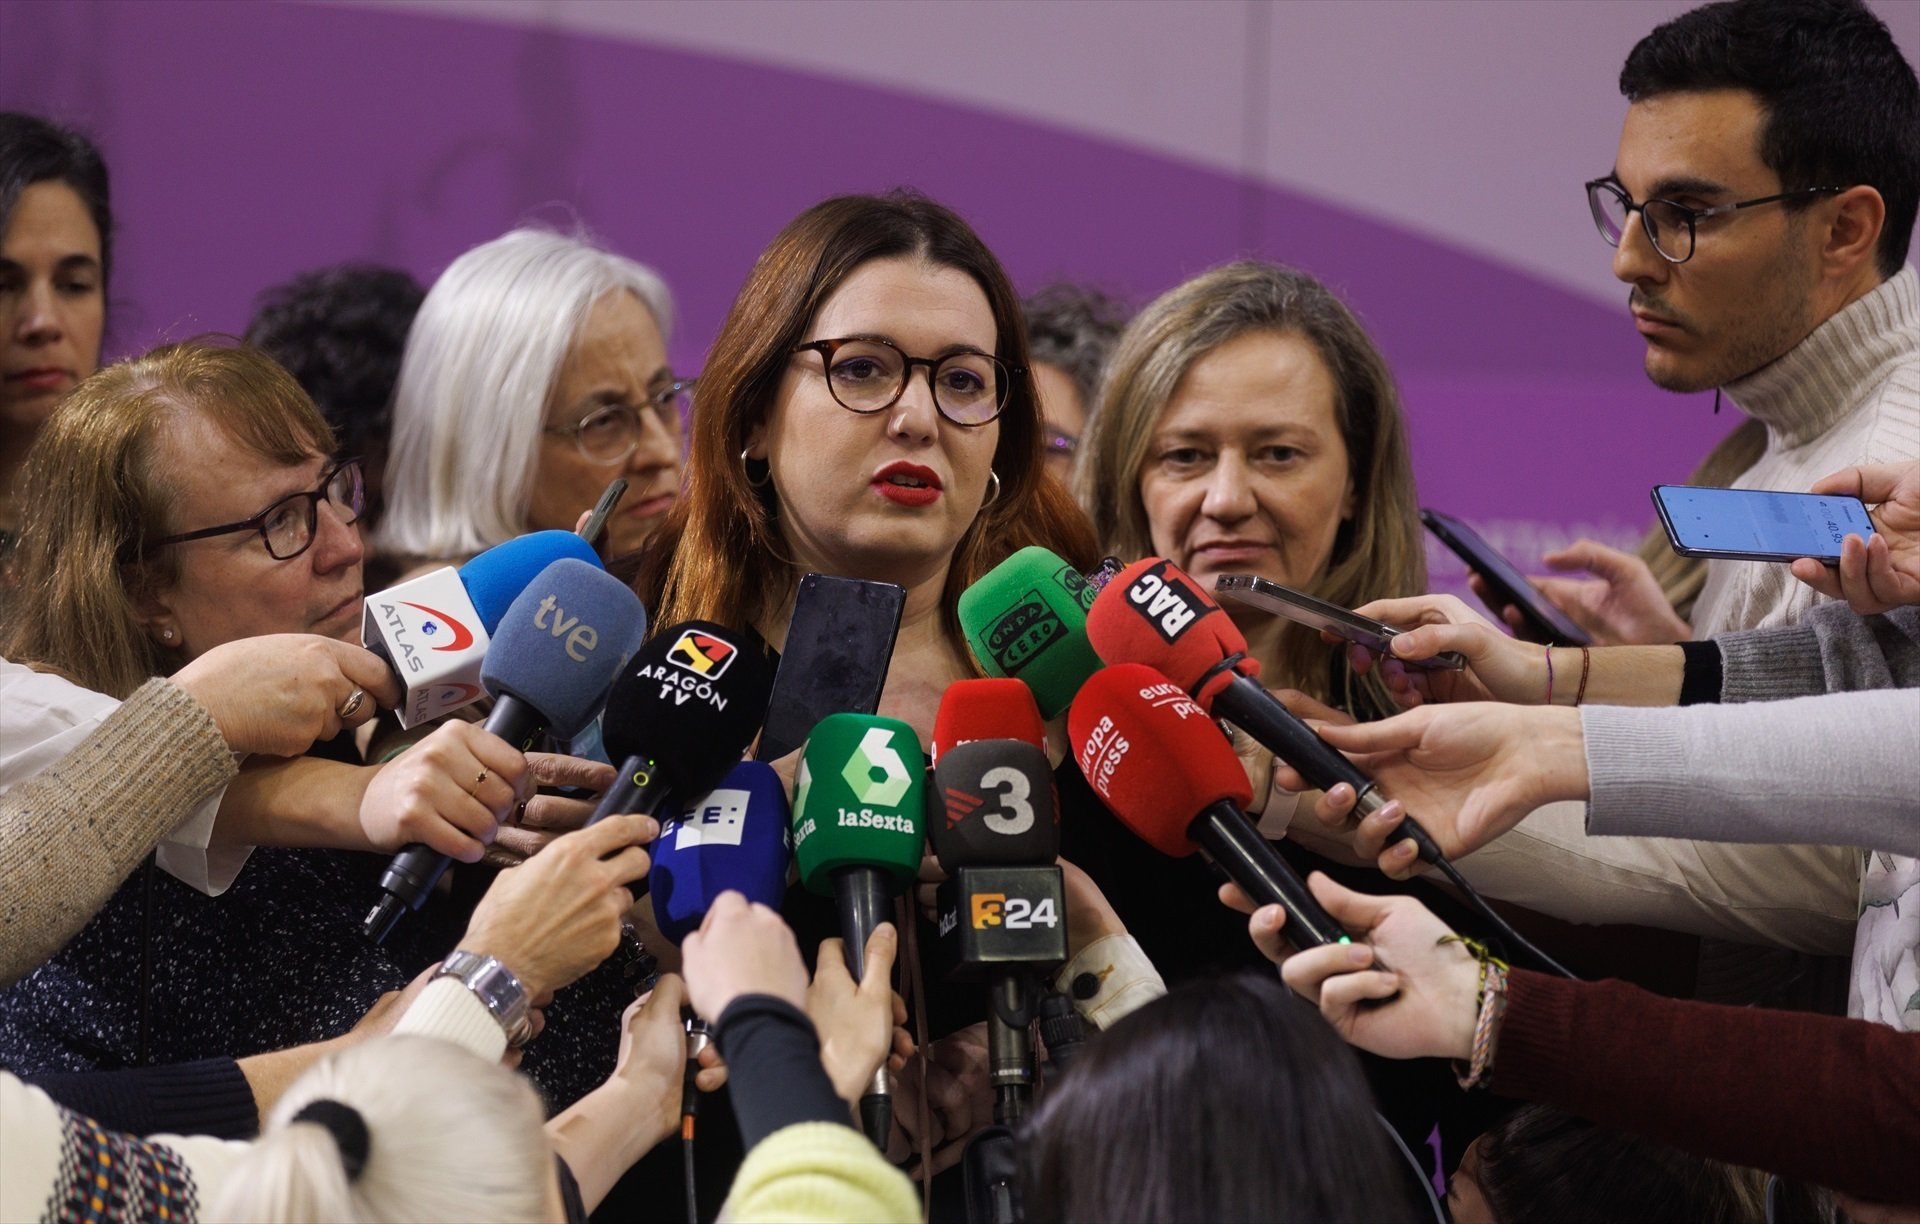 Igualdad se cierra en banda y rechaza la propuesta de reforma del PSOE del 'solo sí es sí'